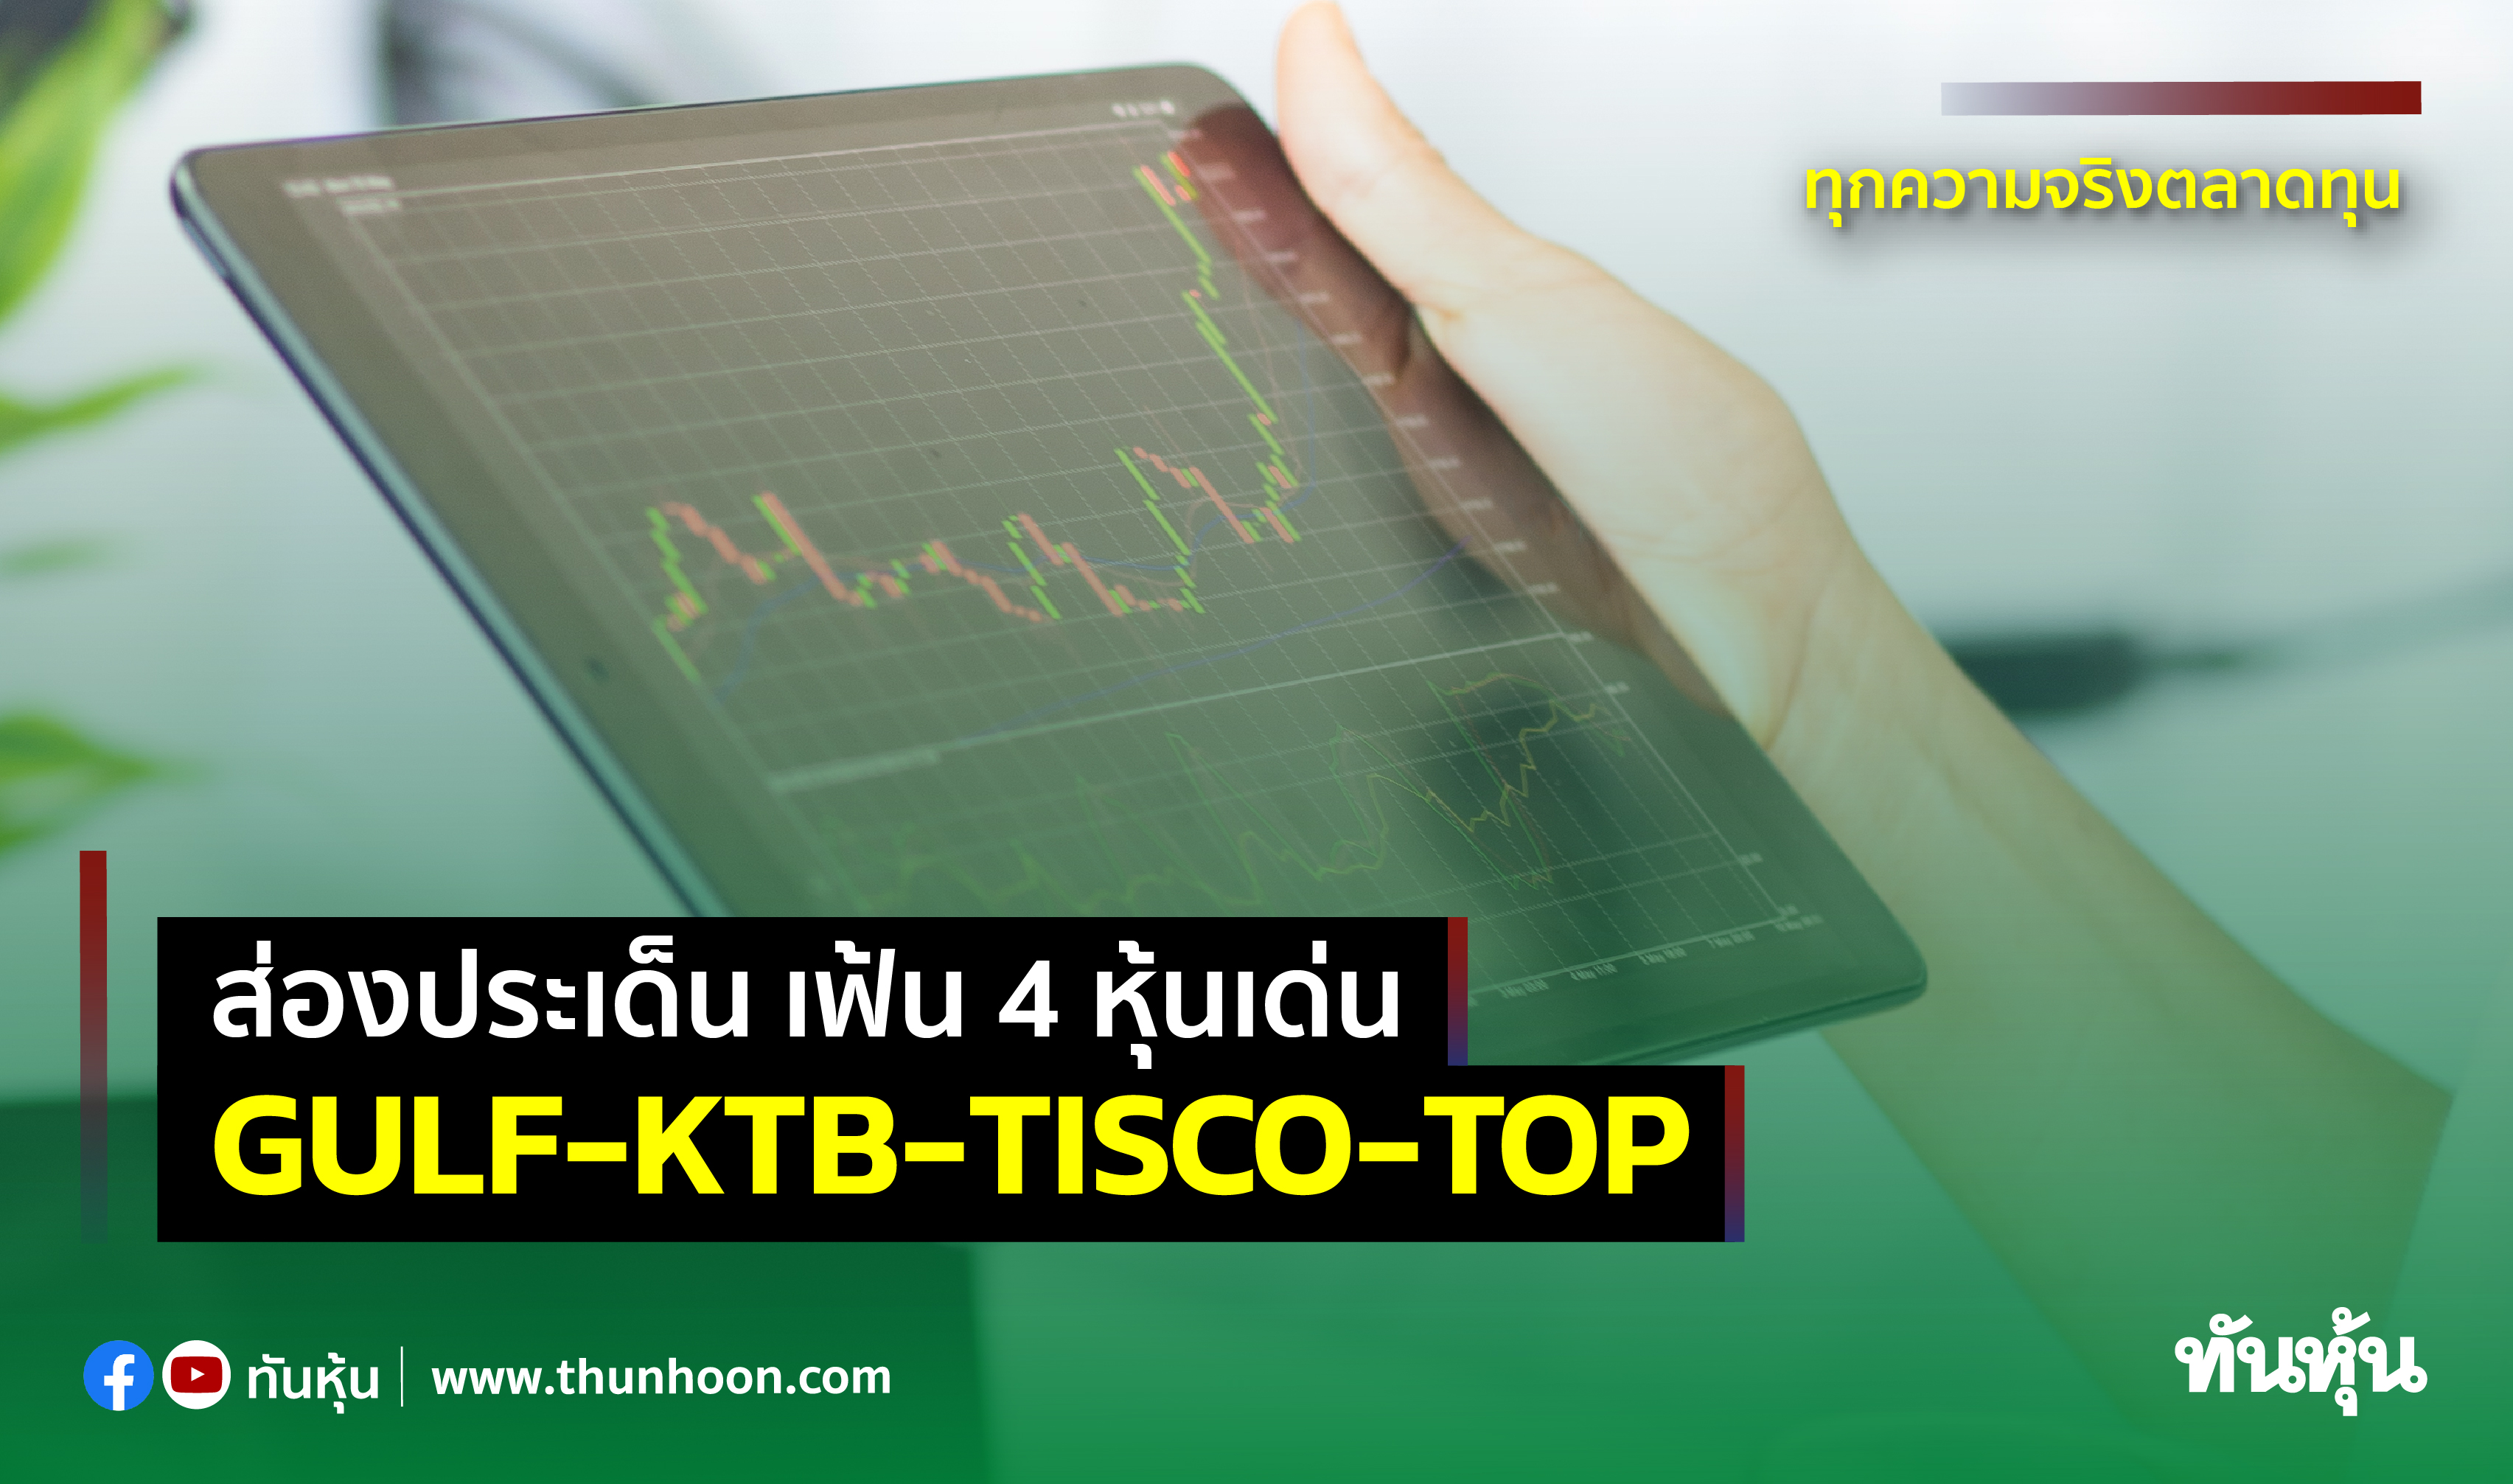 ส่องประเด็น เฟ้น 4 หุ้นเด่น GULF-KTB-TISCO-TOP